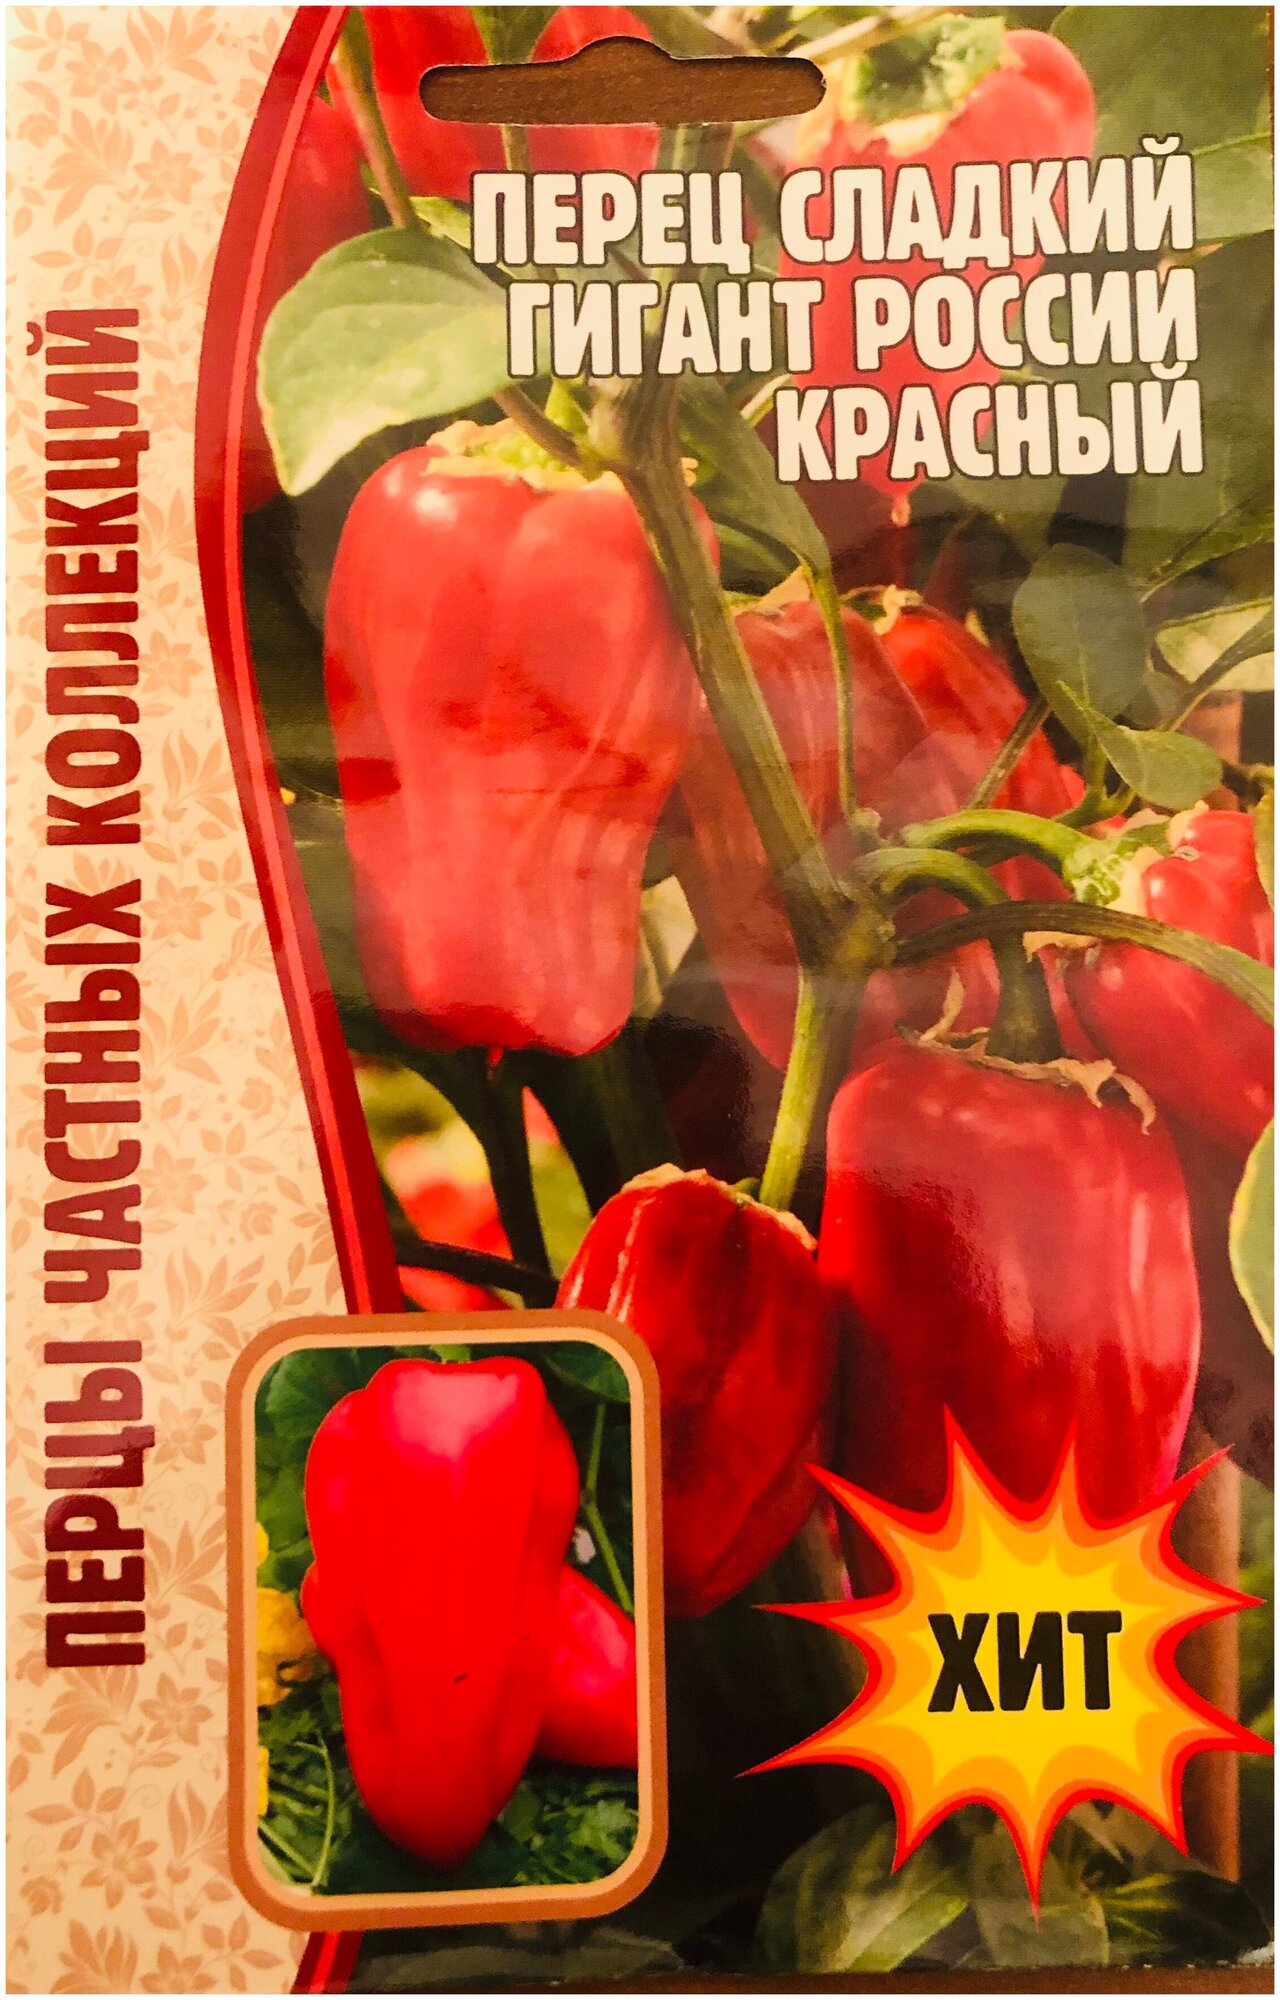 Семена Перца сладкого толстостенного "Гигант России Красный" (10 семян)